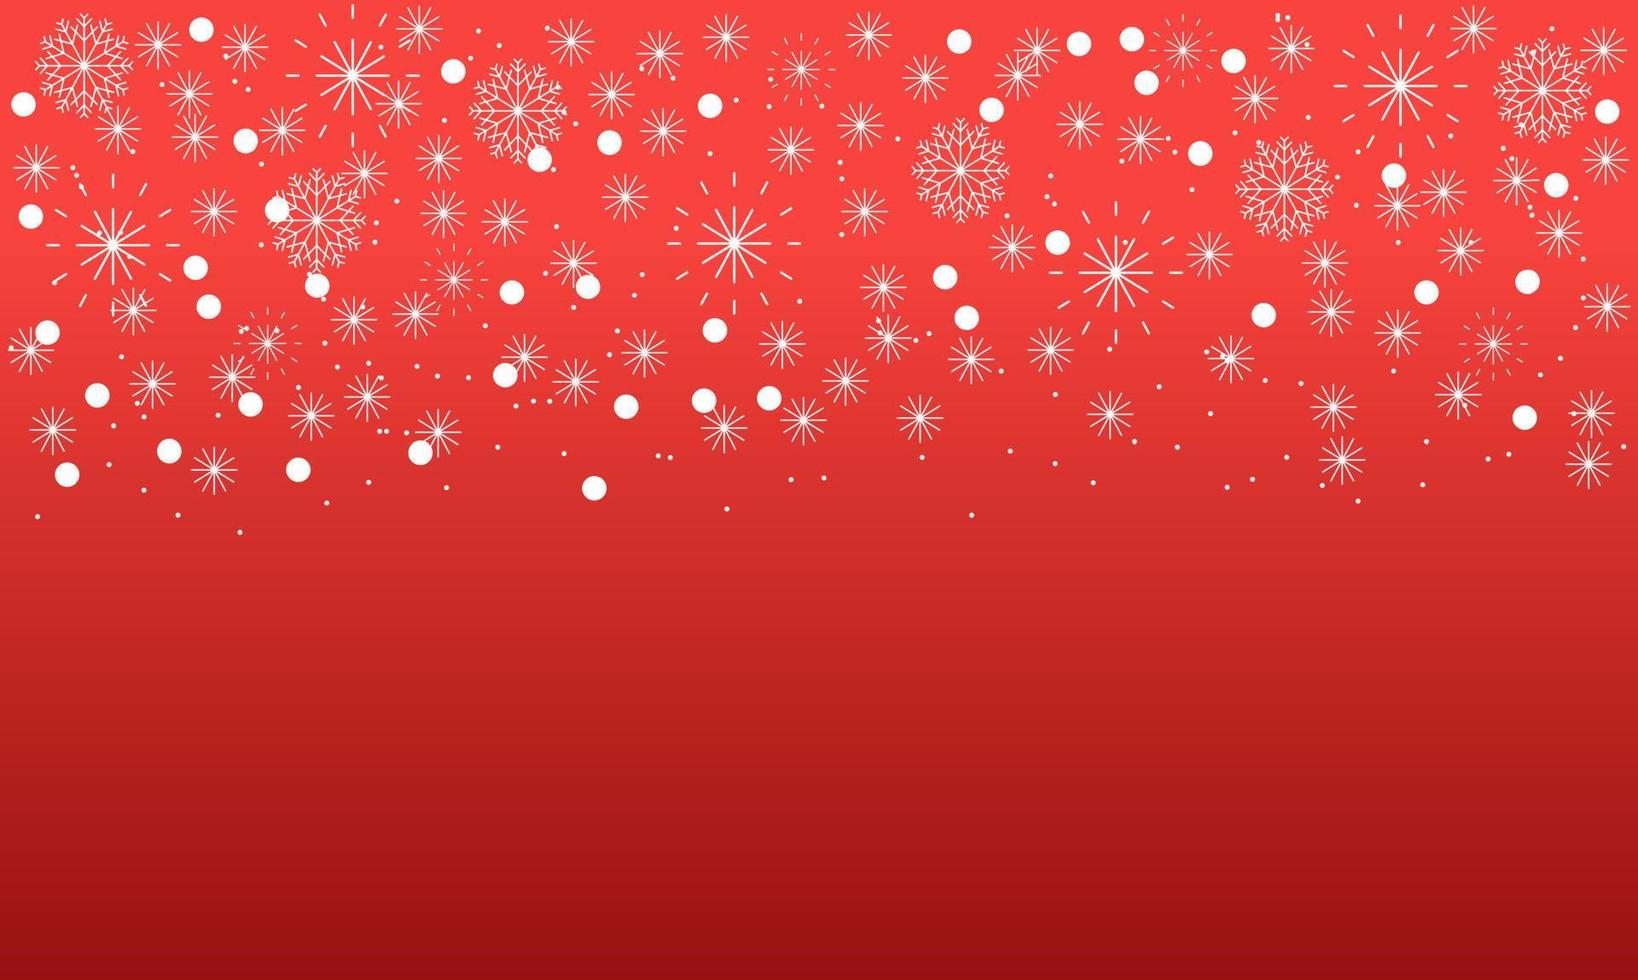 abstract Kerstmis rood achtergrond met wit sneeuwvlokken vector